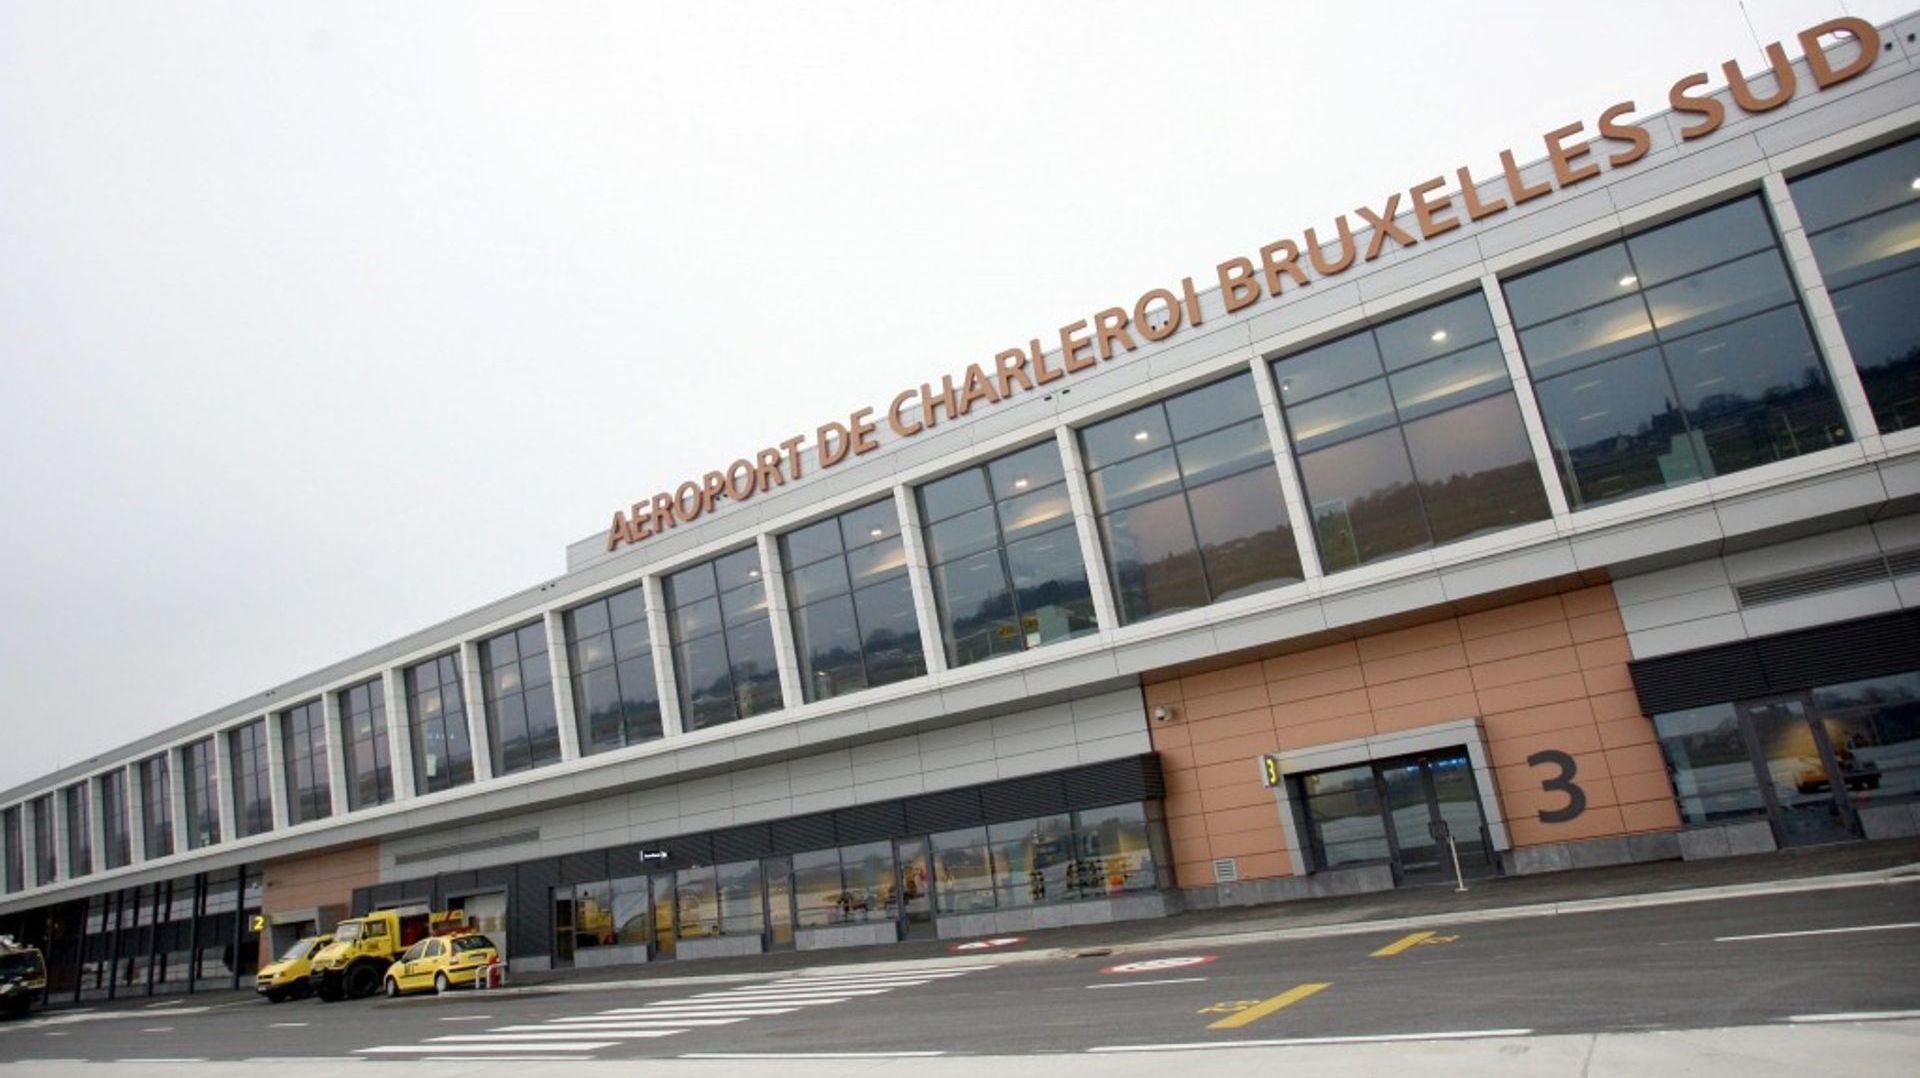 La Commission européenne donne son feu vert à la recapitalisation de BSCA, le gestionnaire de l'aéroport de Charleroi